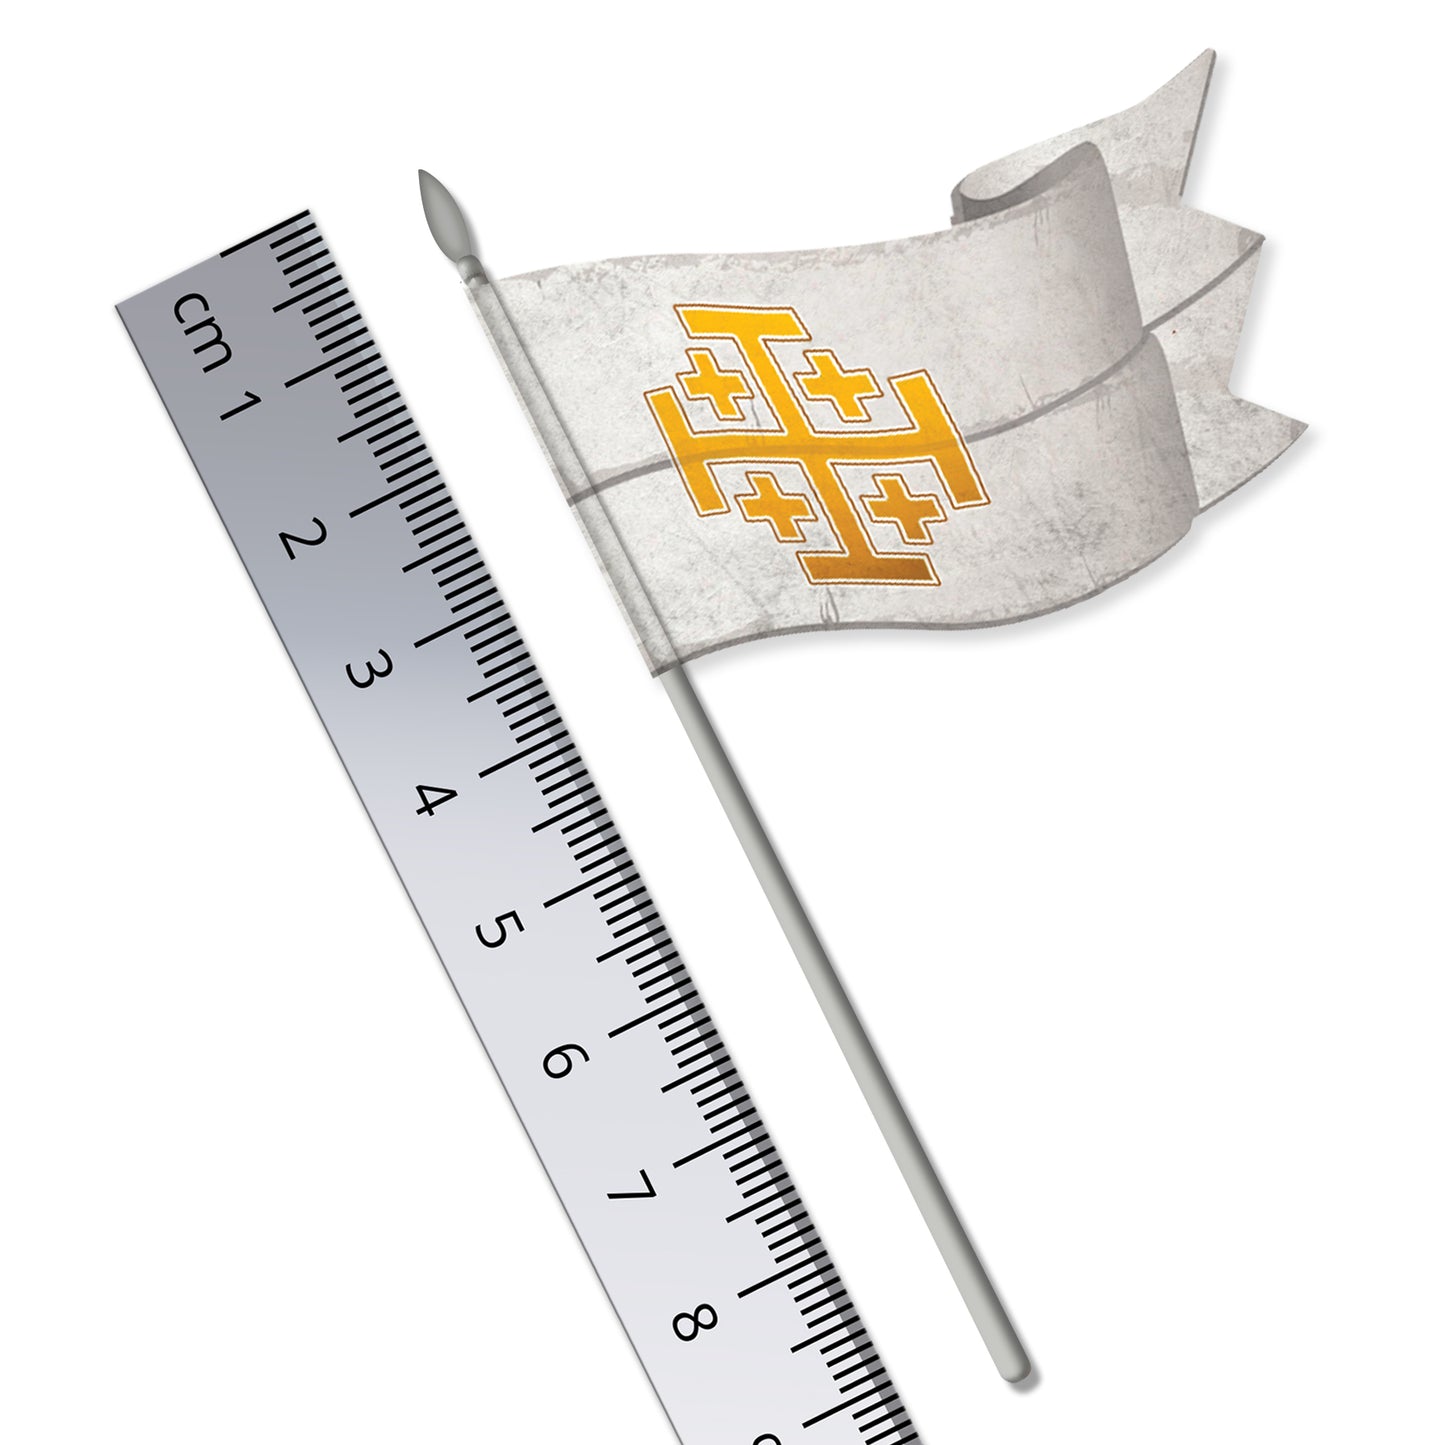 Medieval Knight's Banner Flag (Knights of Jerusalem Motif)